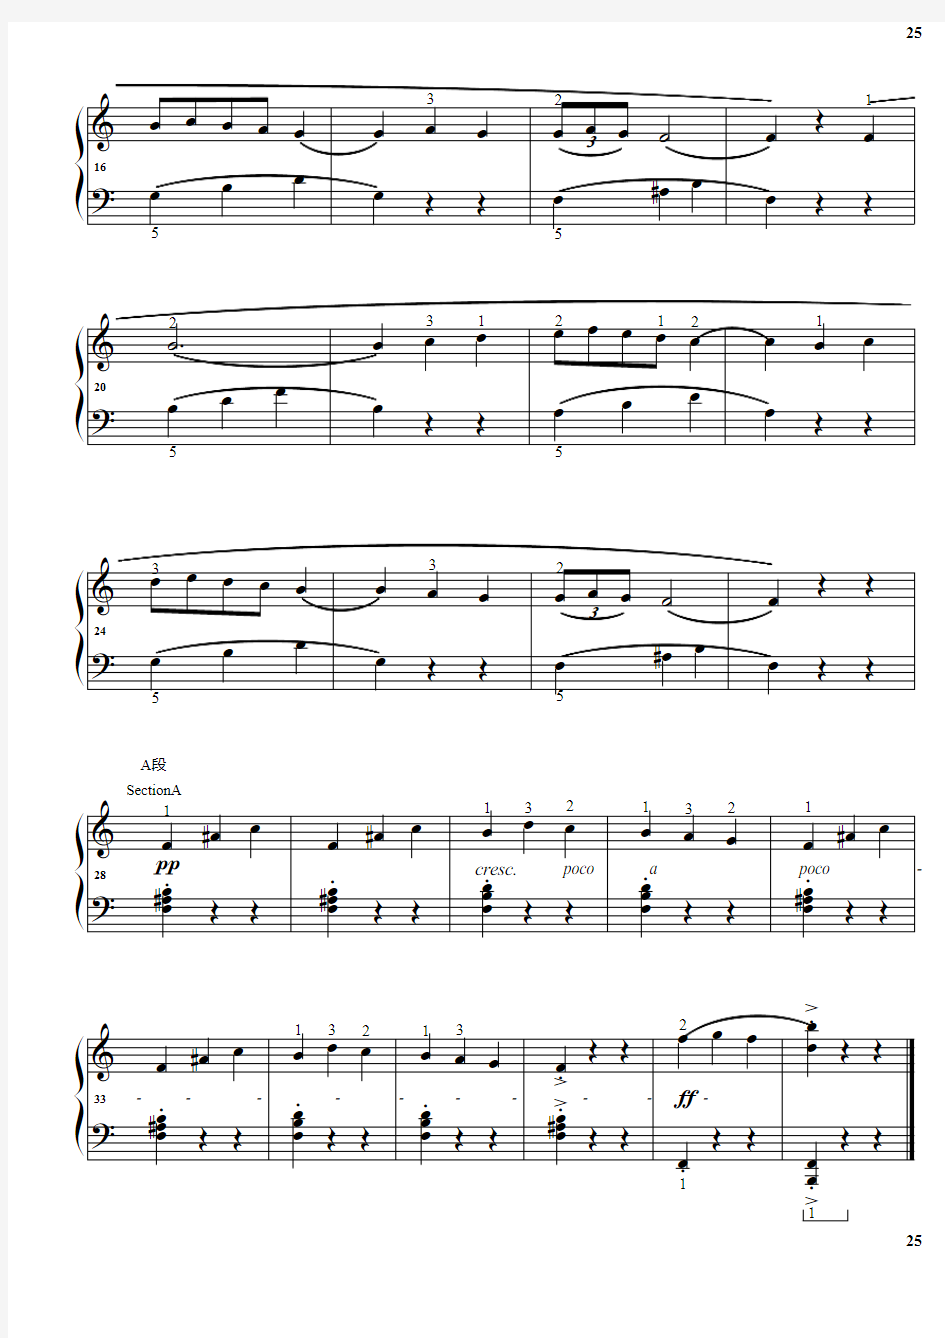 20.斗牛士 巴斯蒂安钢琴教程(4)基础部分 原版 正谱 五线谱 钢琴谱